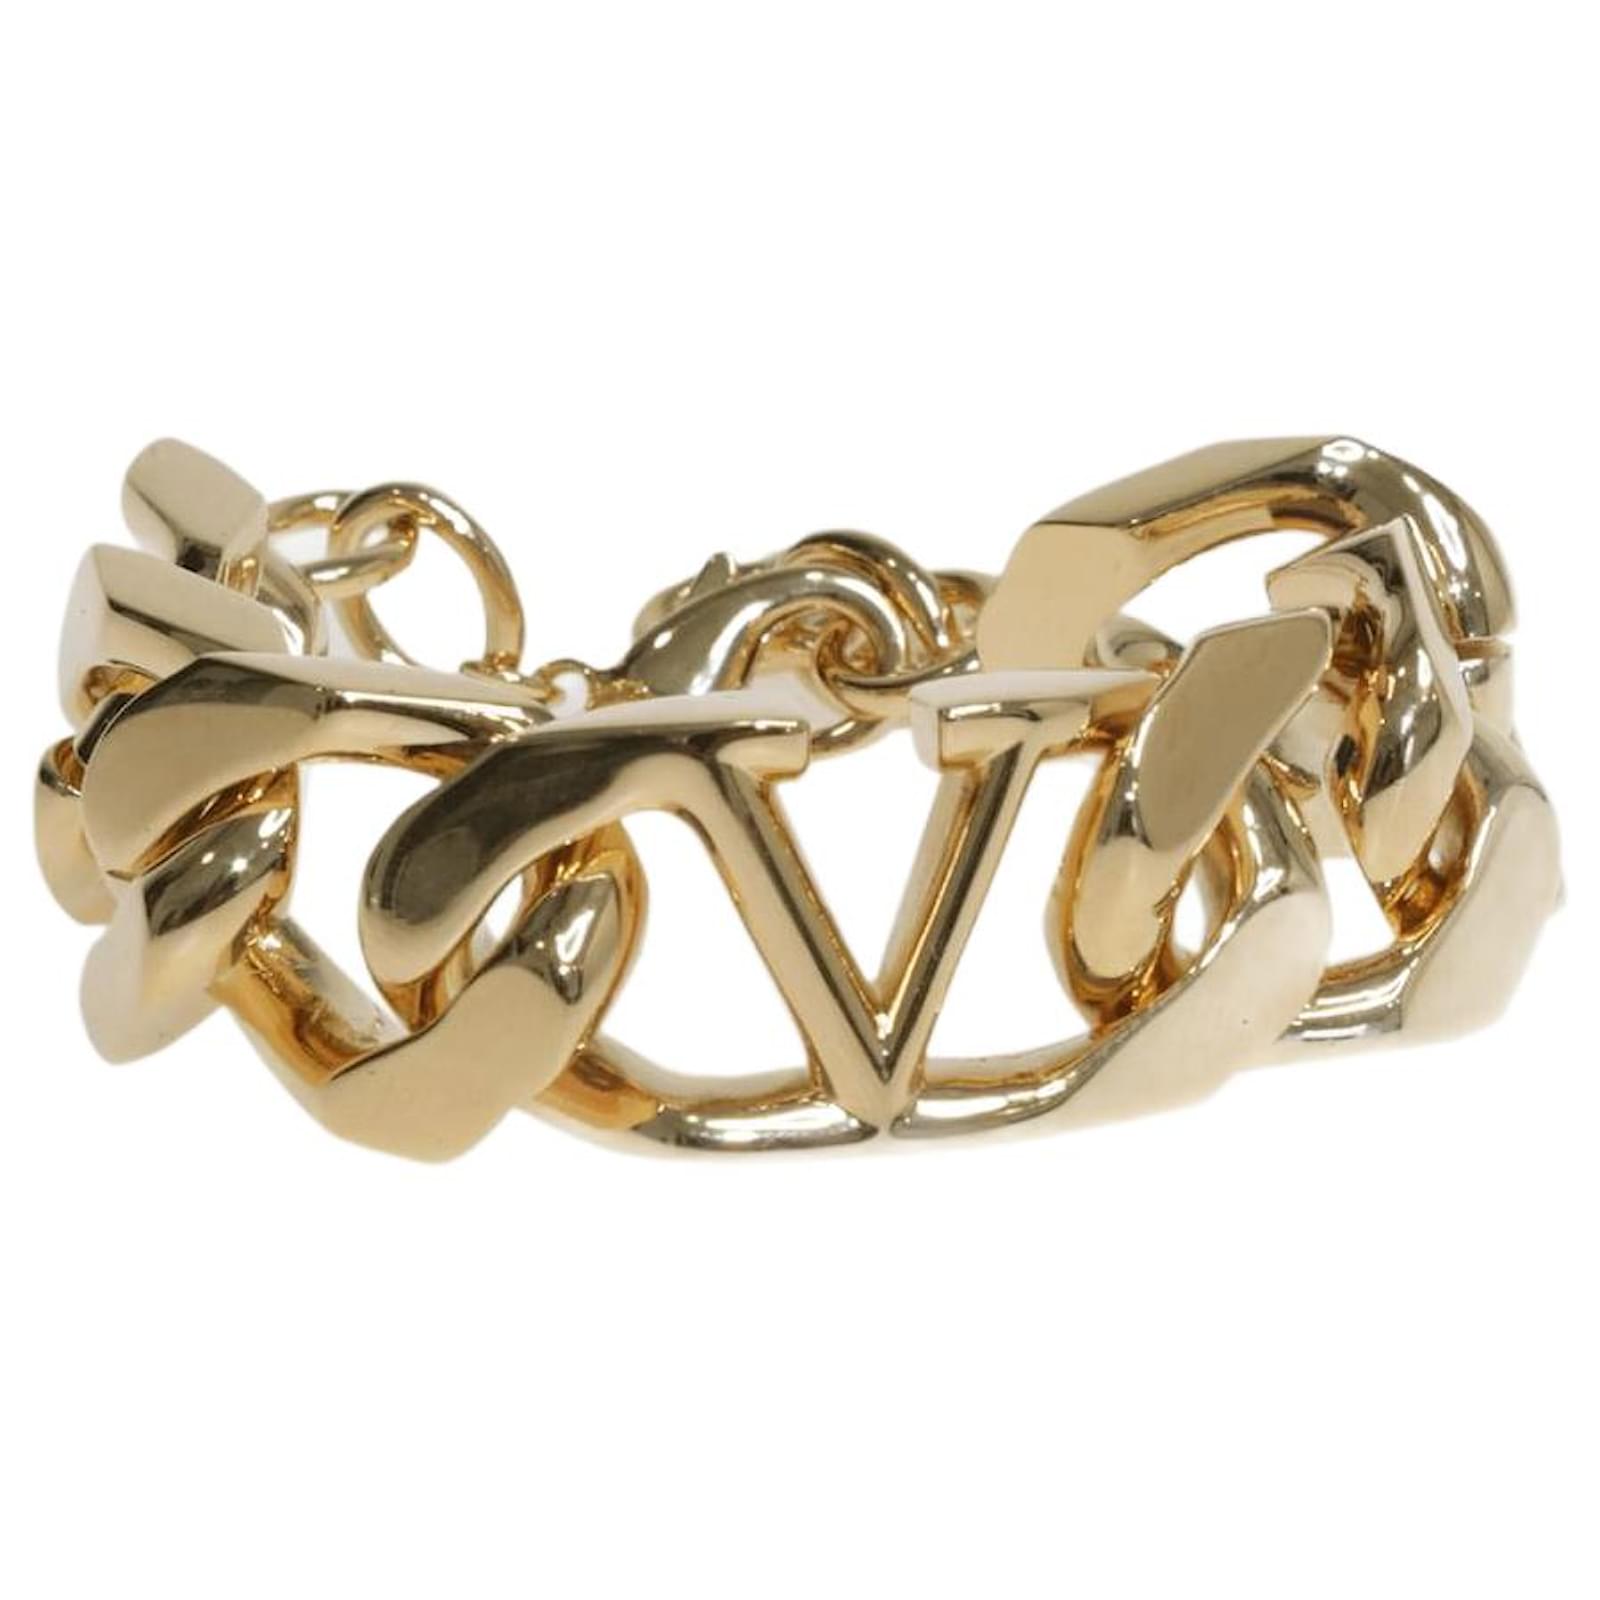 V Logo Chain Bracelet in Gold - Valentino